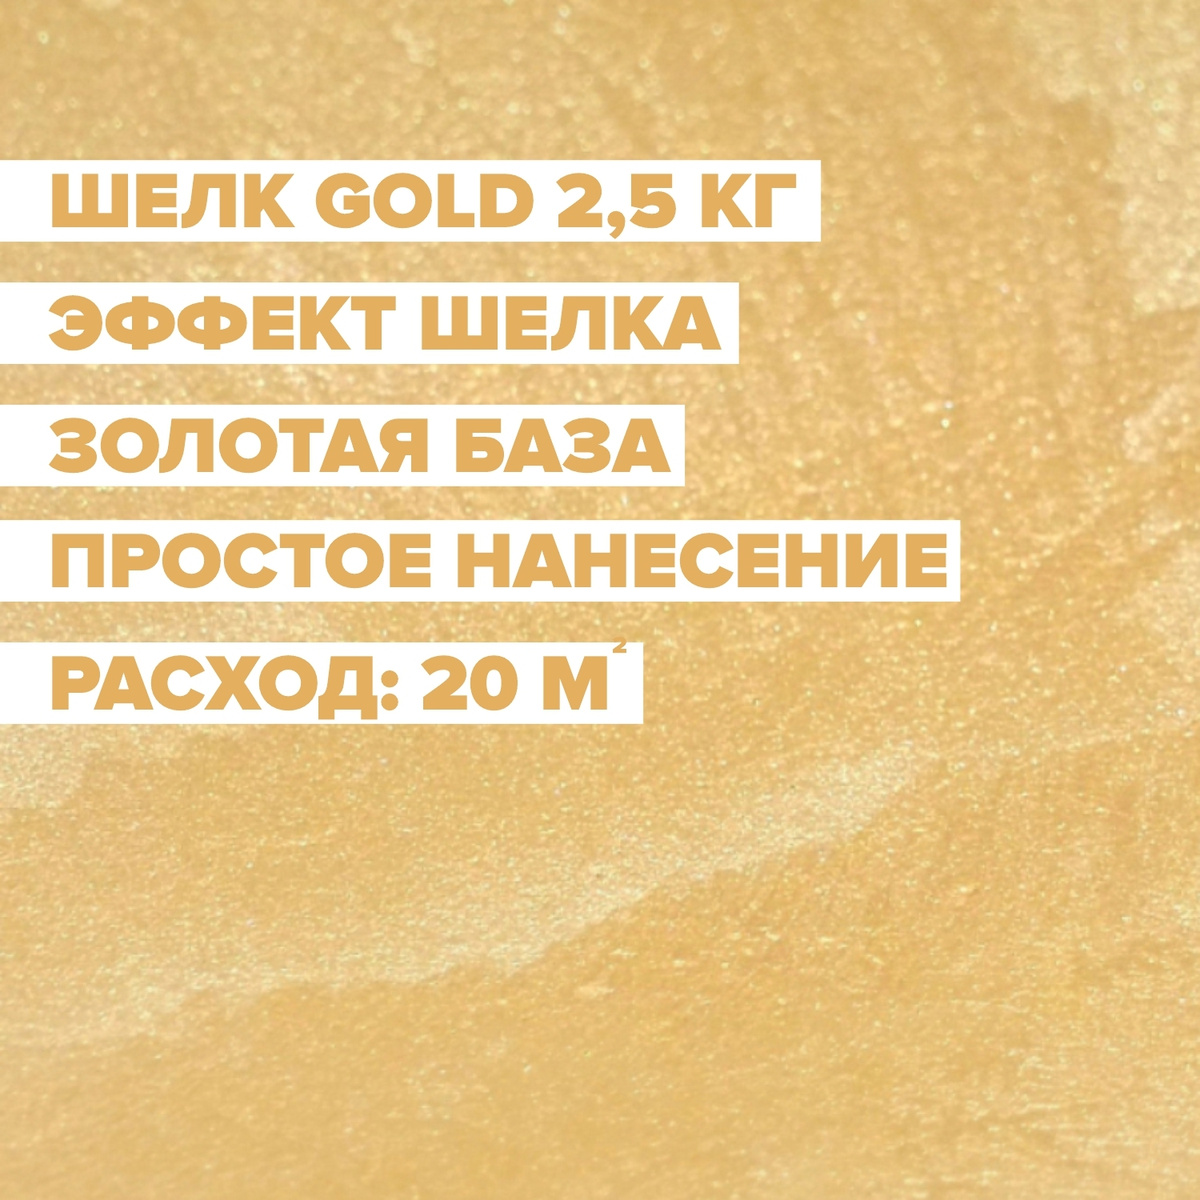 Декоративная краска DESSA DECOR Шелк Gold 2,5 кг - перламутровая декоративная штукатурка для имитации #1